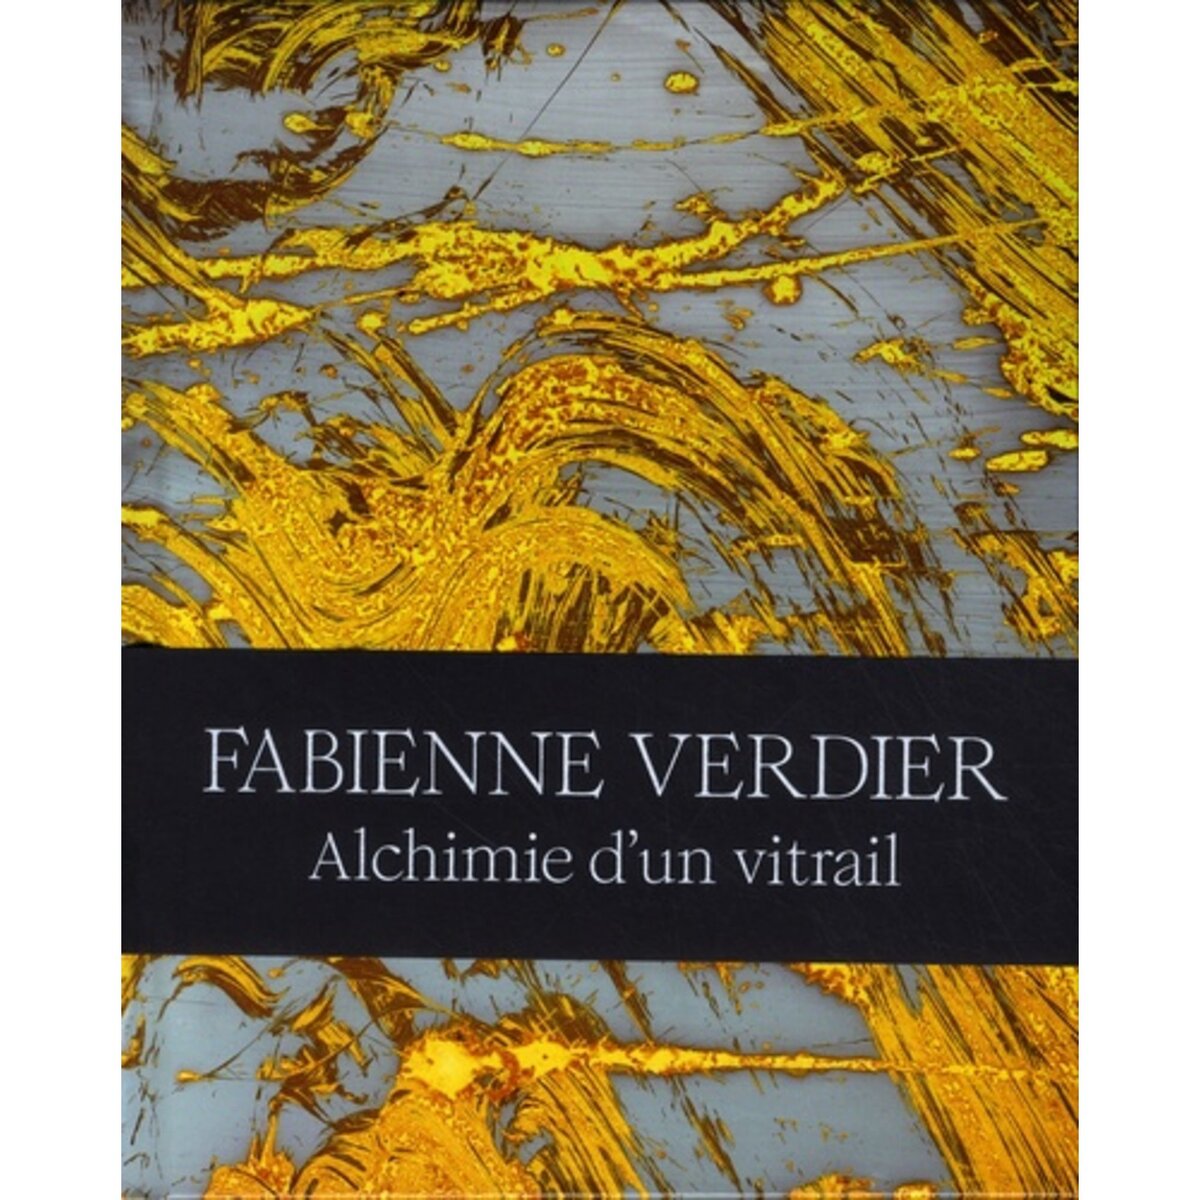  FABIENNE VERDIER. ALCHIMIE D'UN VITRAIL, Bertran Cécile